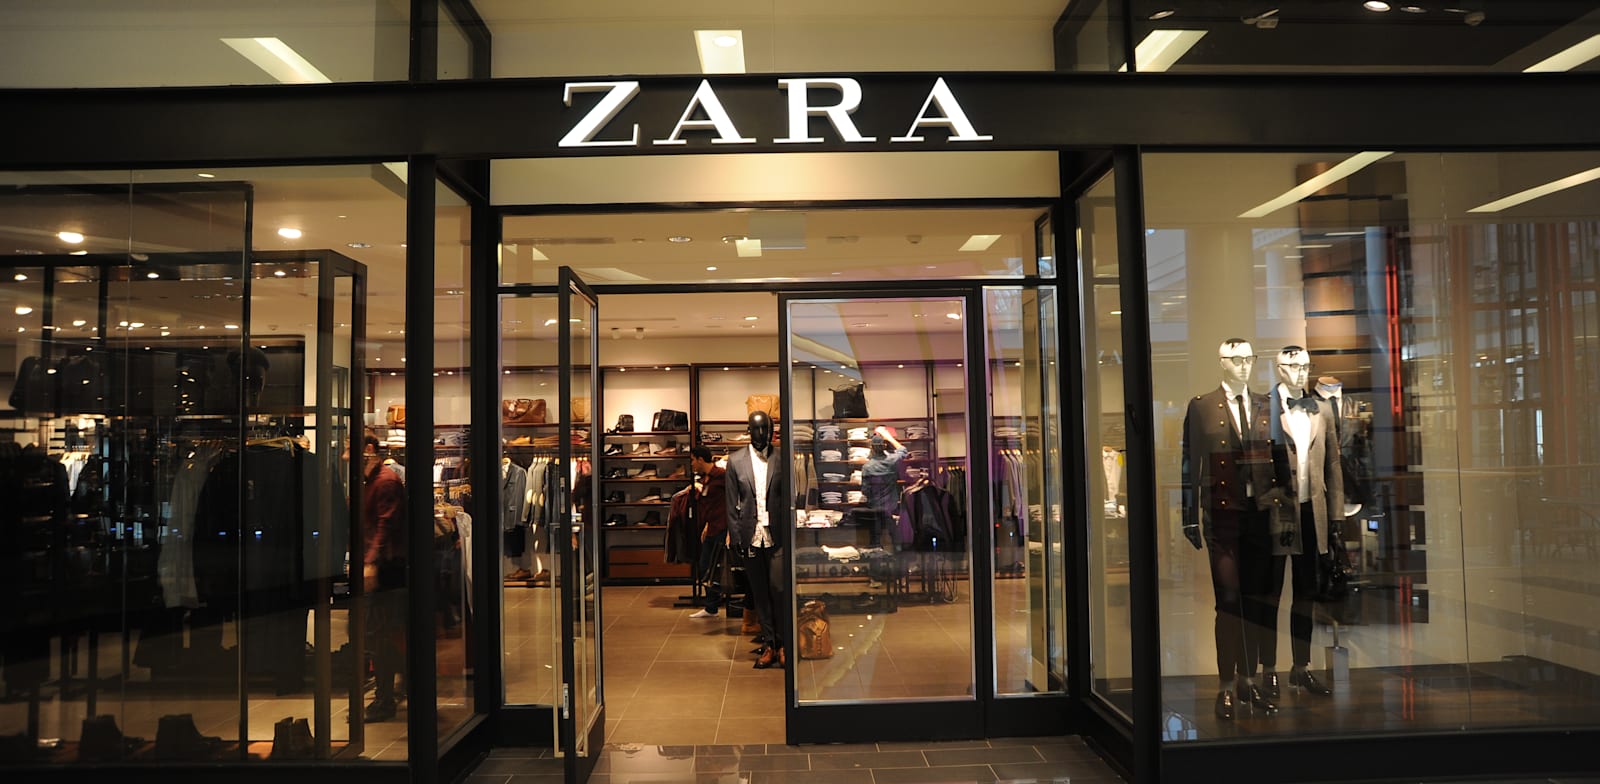 חנות של זארה / צילום: איל יצהר